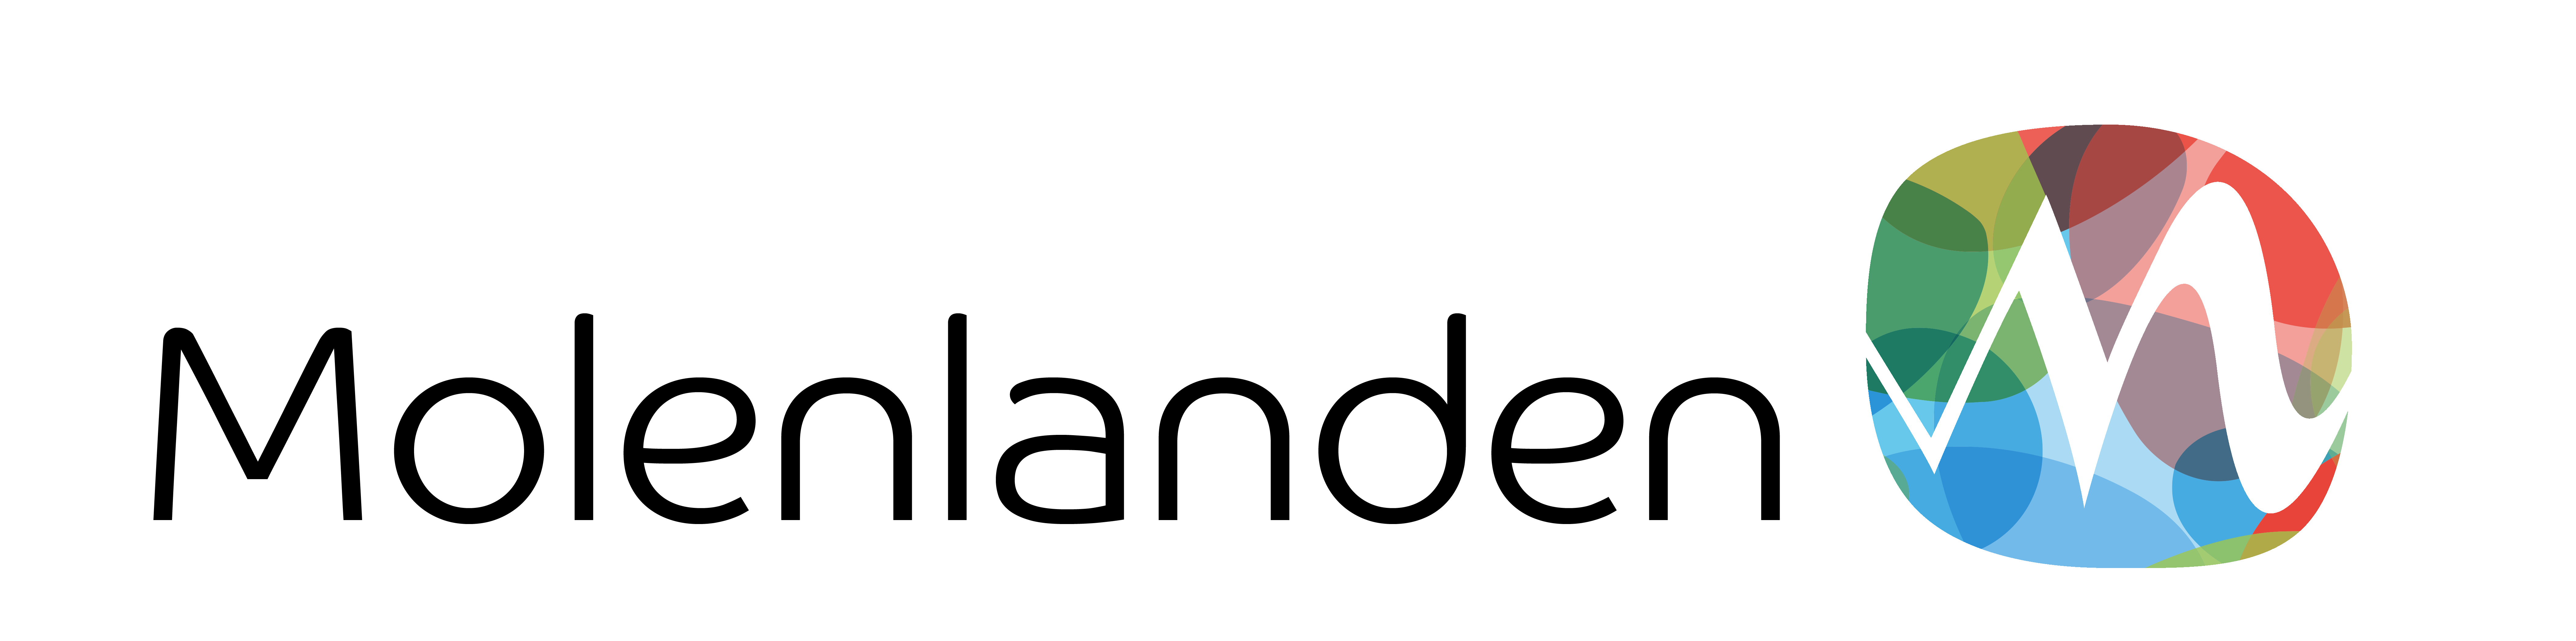 Logo Molenlanden